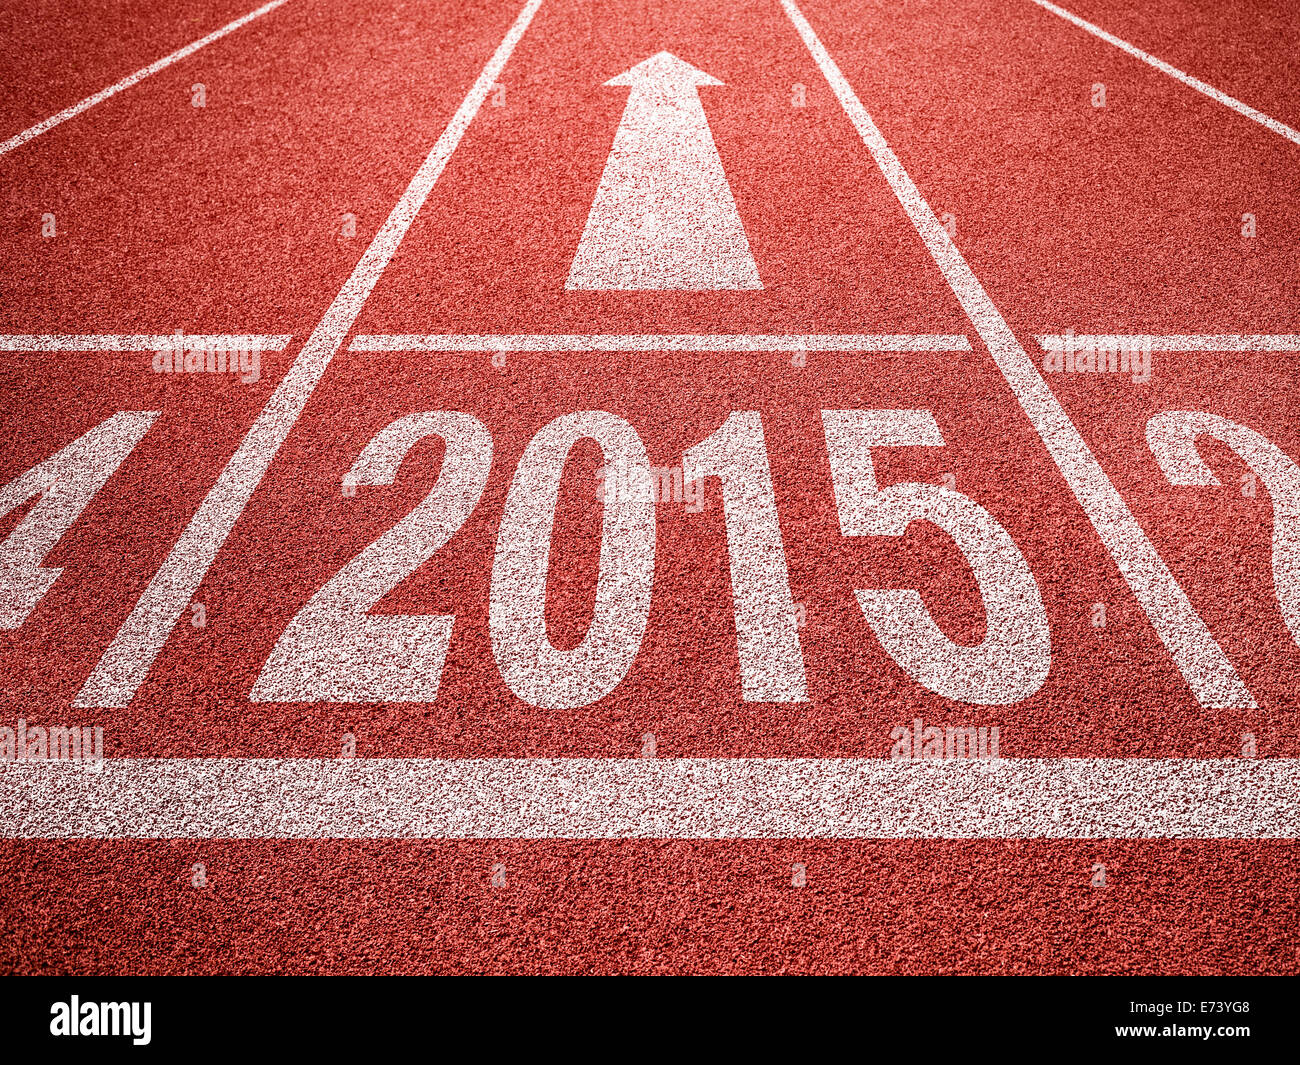 Nuovo anno 2015 diggits sullo sport via con la freccia. Buon inizio per far crescere il business del concetto. Foto Stock